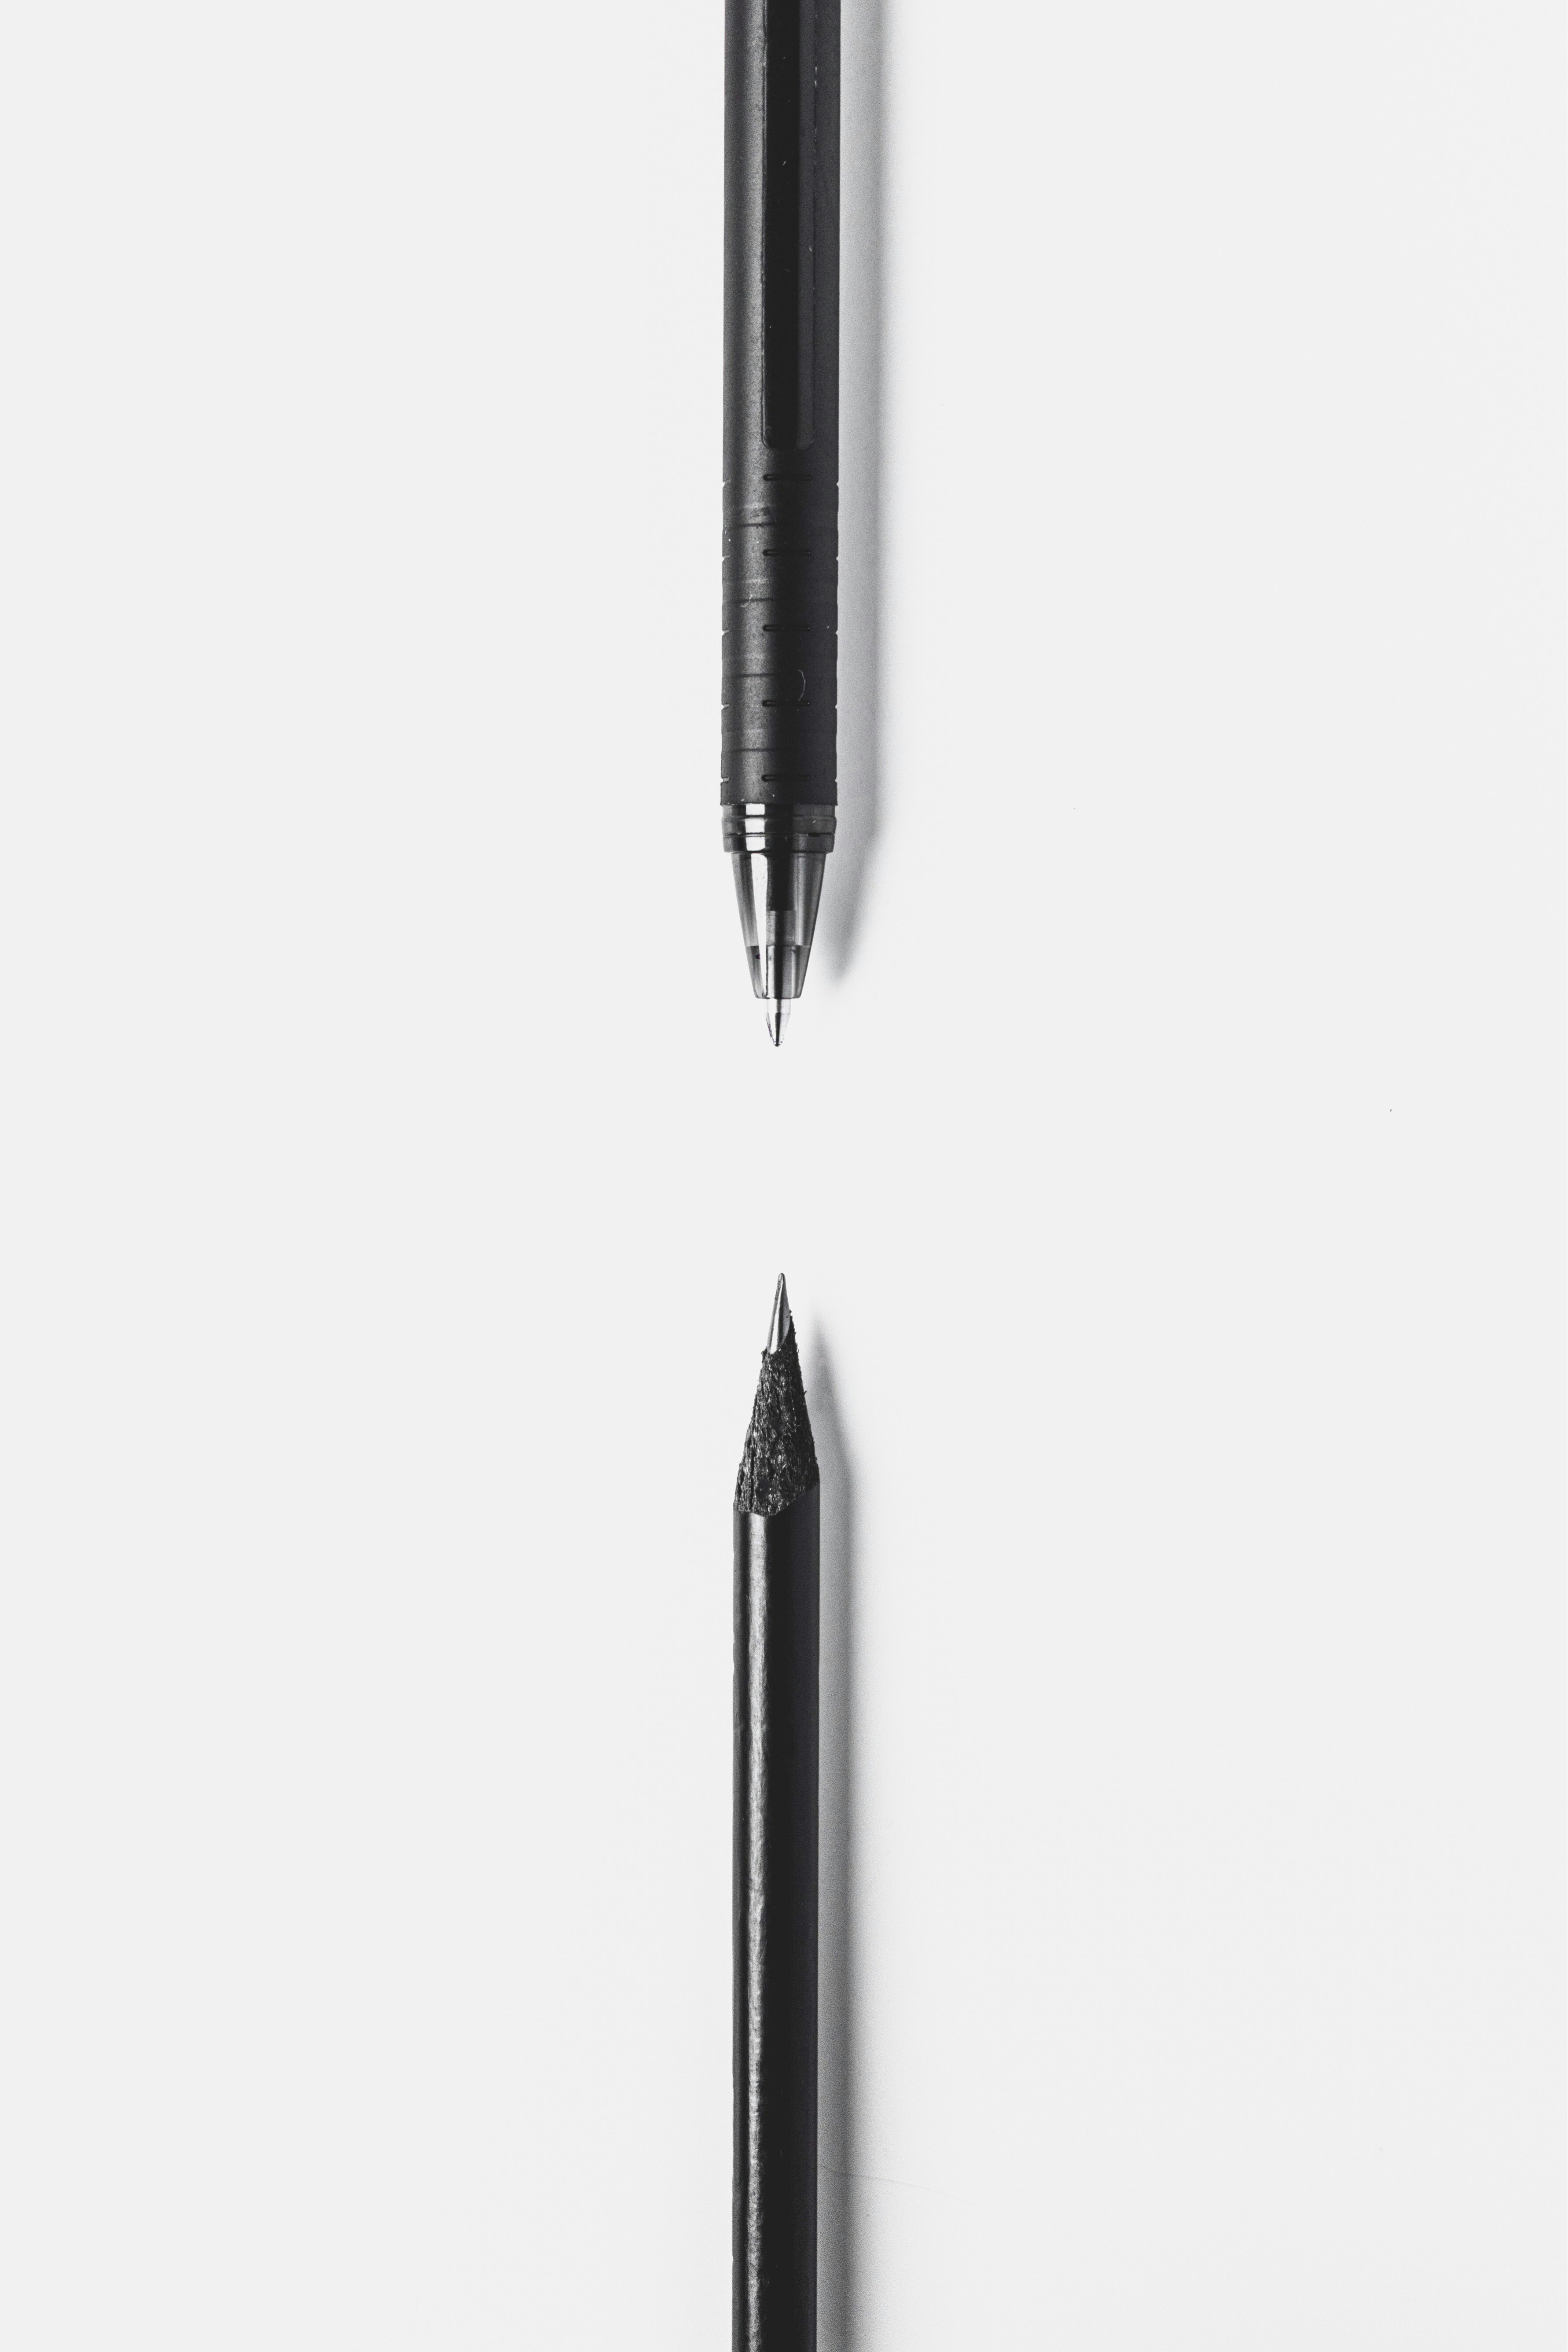 black pen on white surface